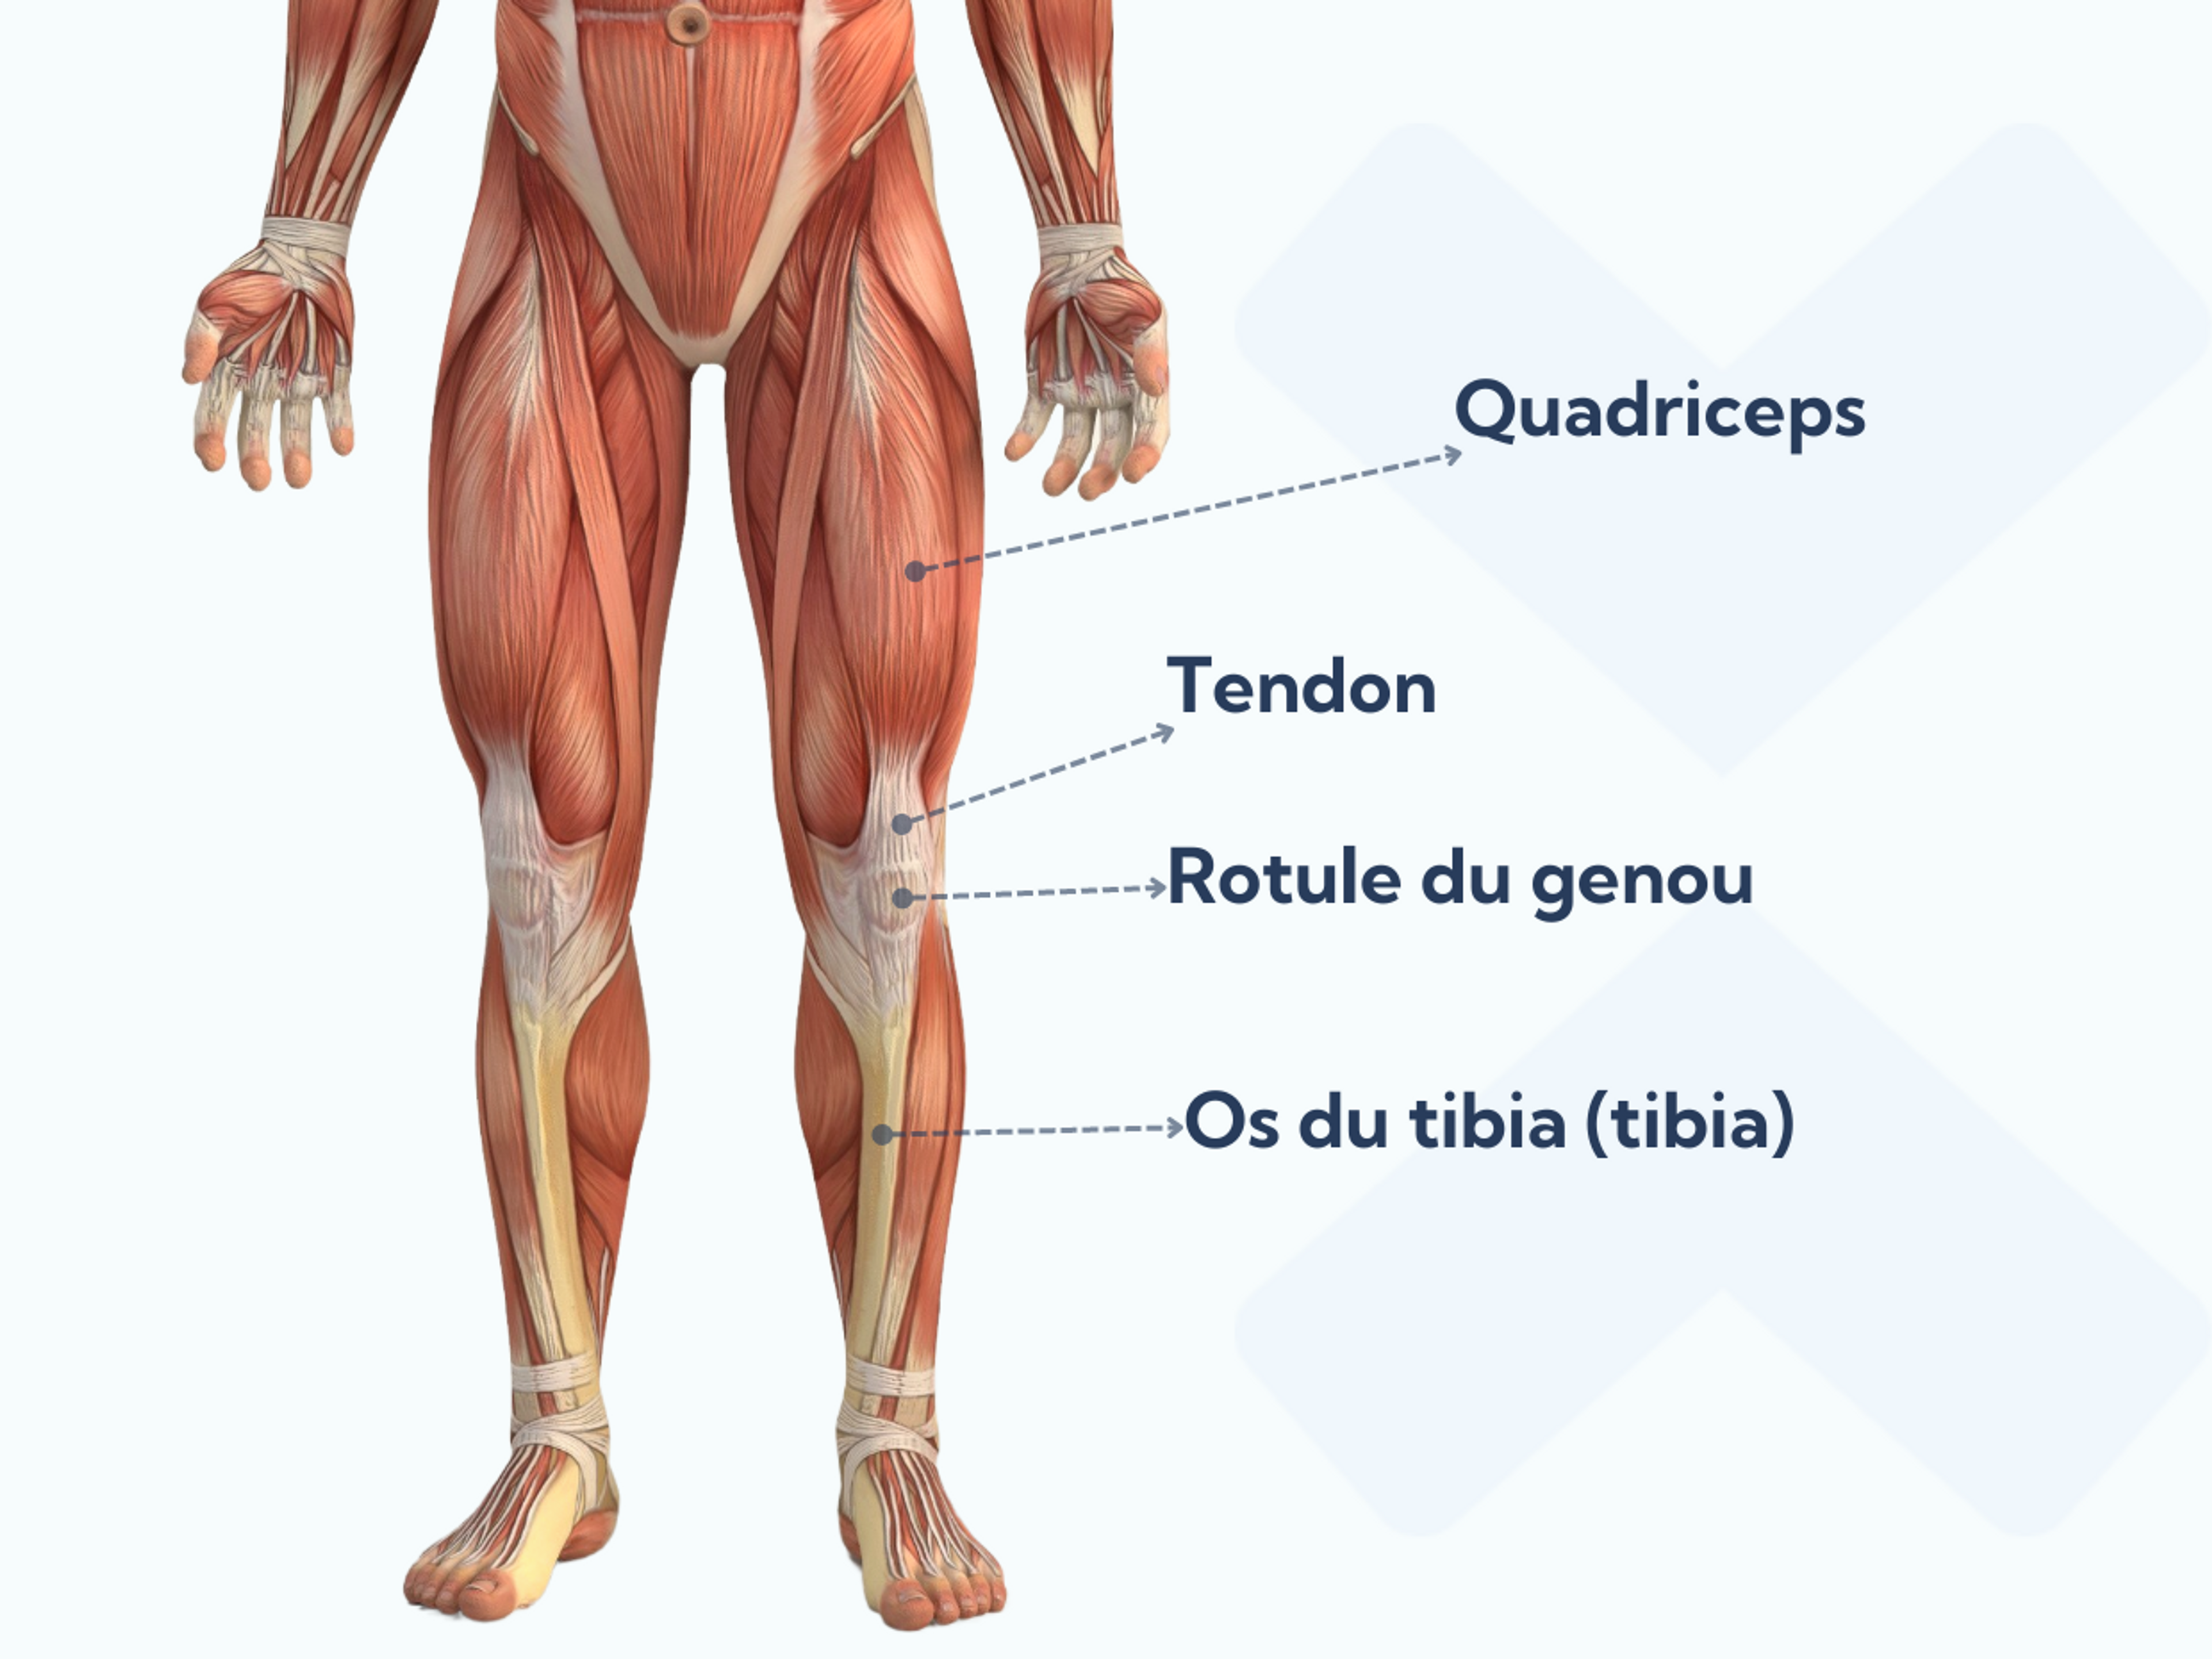 La rotule se trouve à l’intérieur du tendon qui relie les muscles quadriceps à la partie inférieure de la jambe.